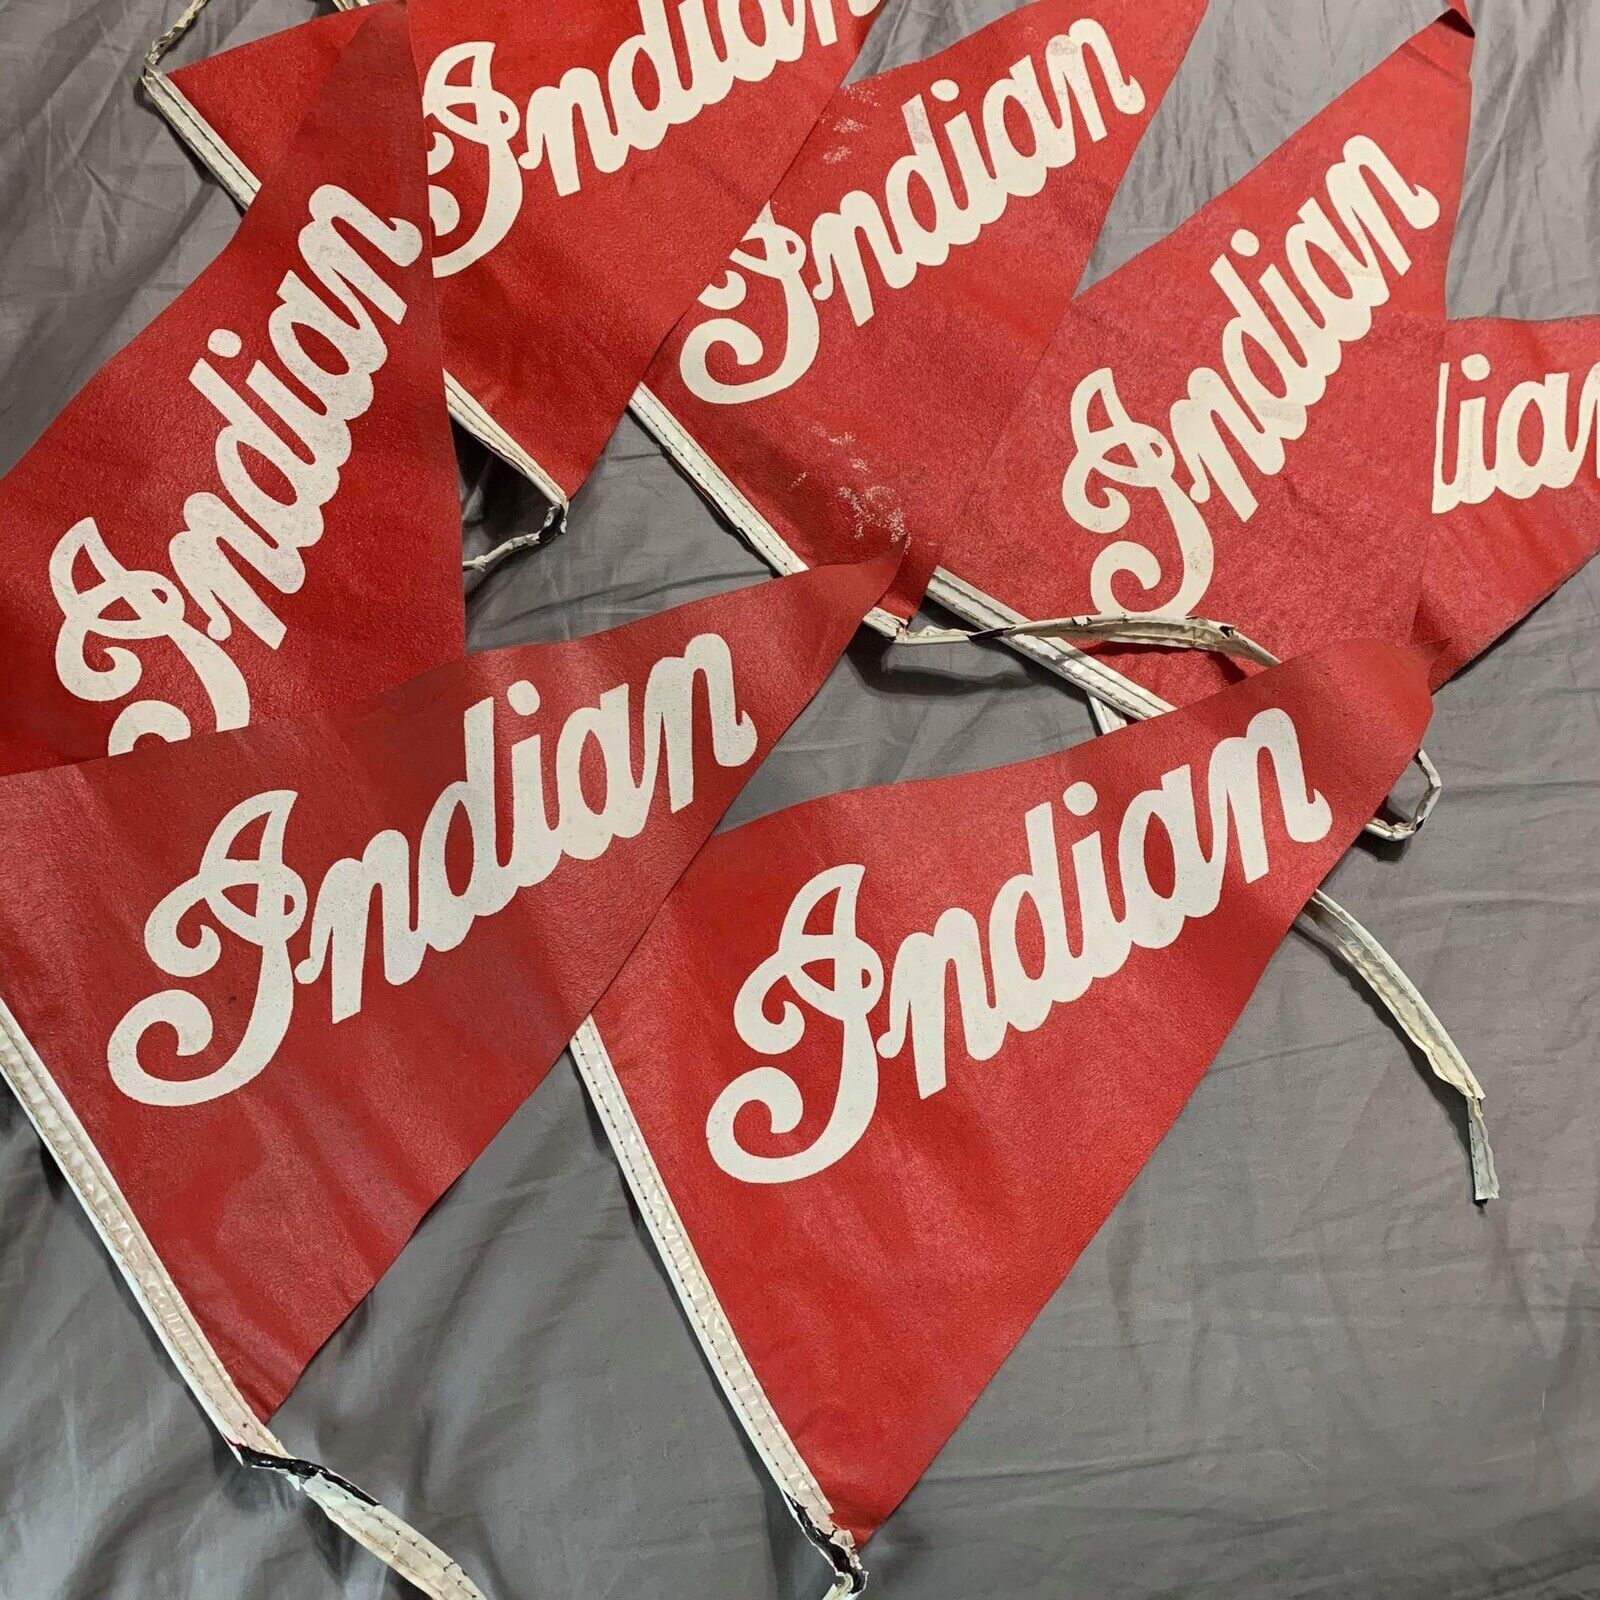 Vintage RARE Original Indian Motorcycle Dealer Flag Strand (7) Display Signs